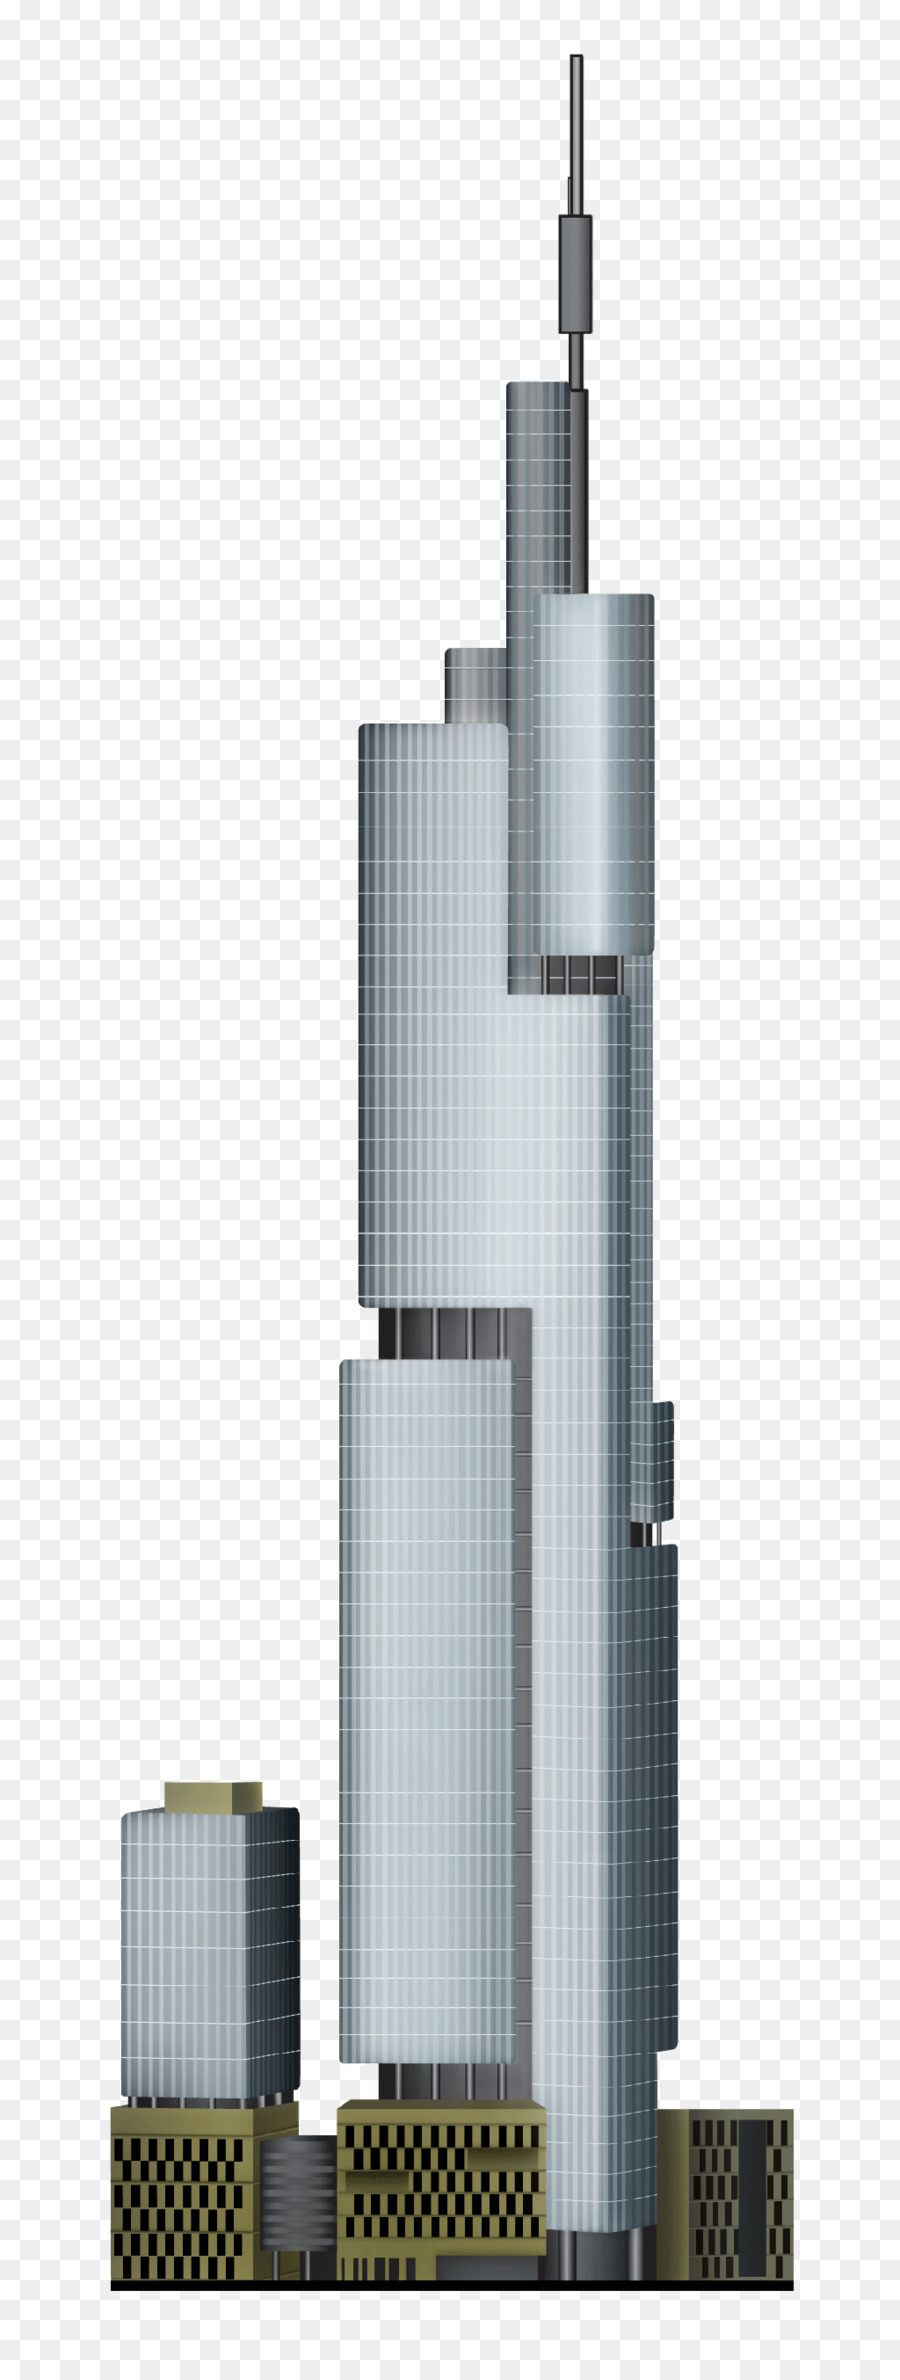 Grattacielo Di Facciata - grattacielo